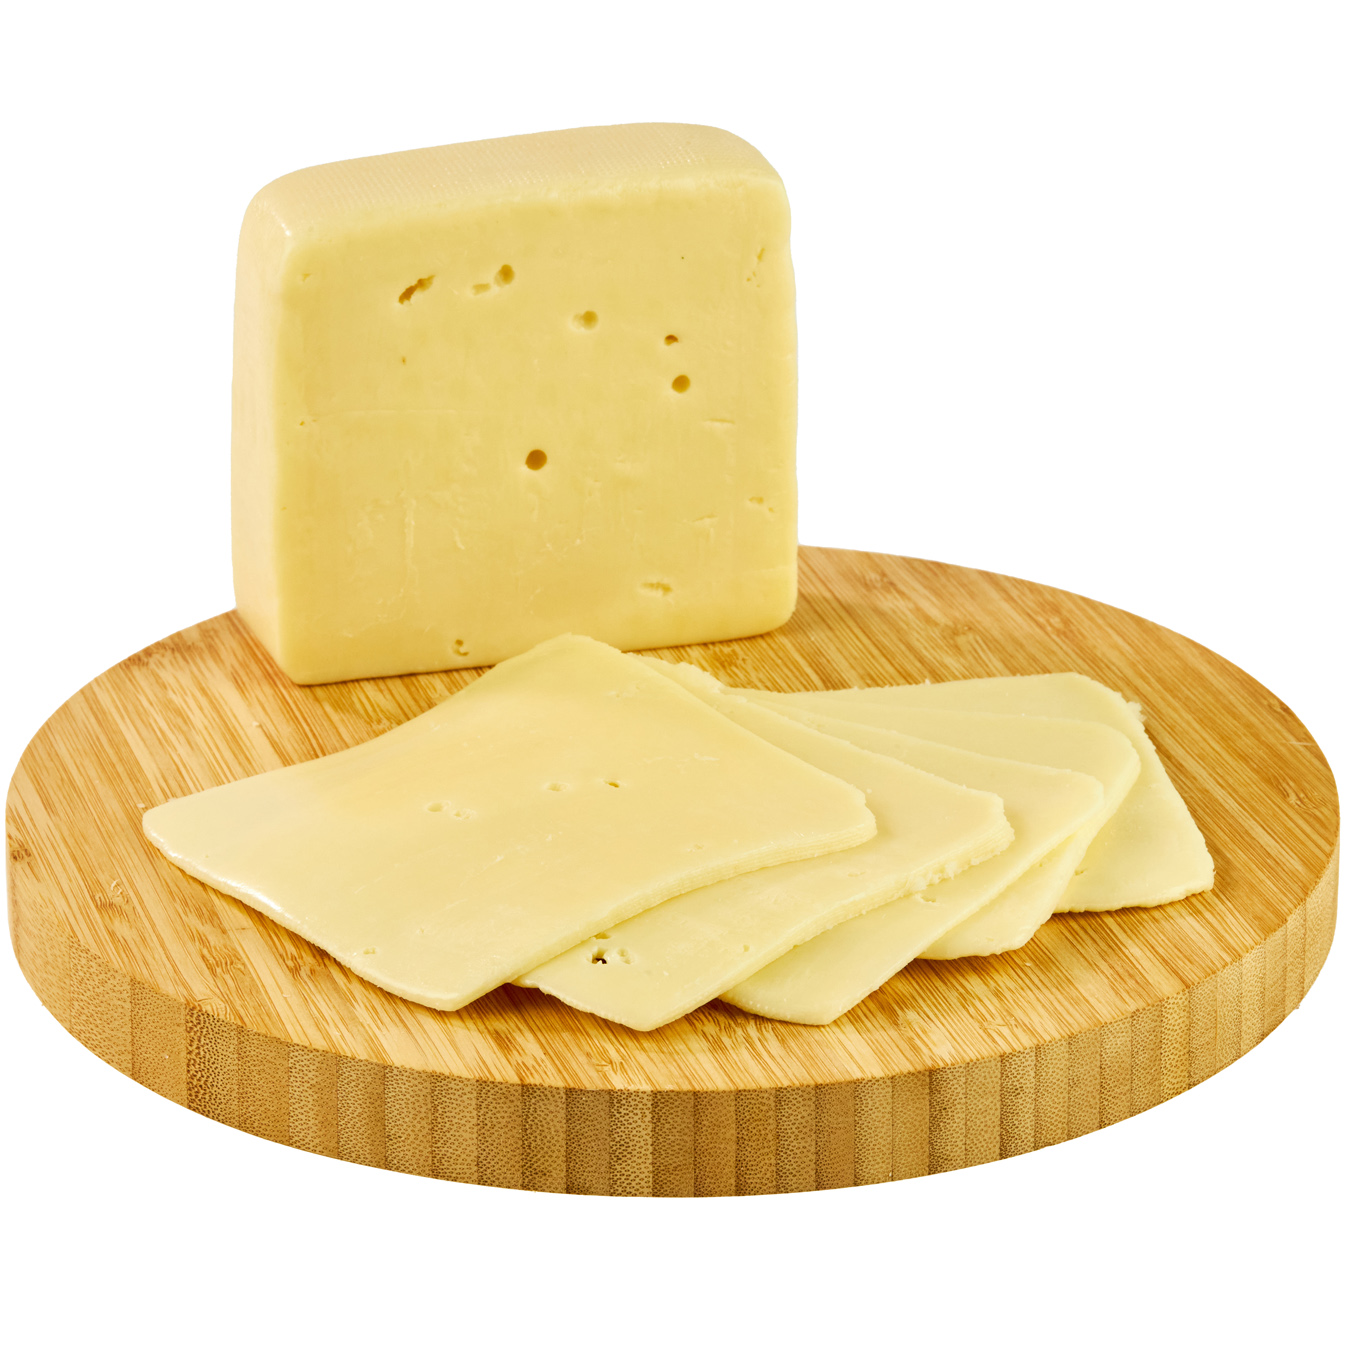 Ammerlander Edam cheese 40%